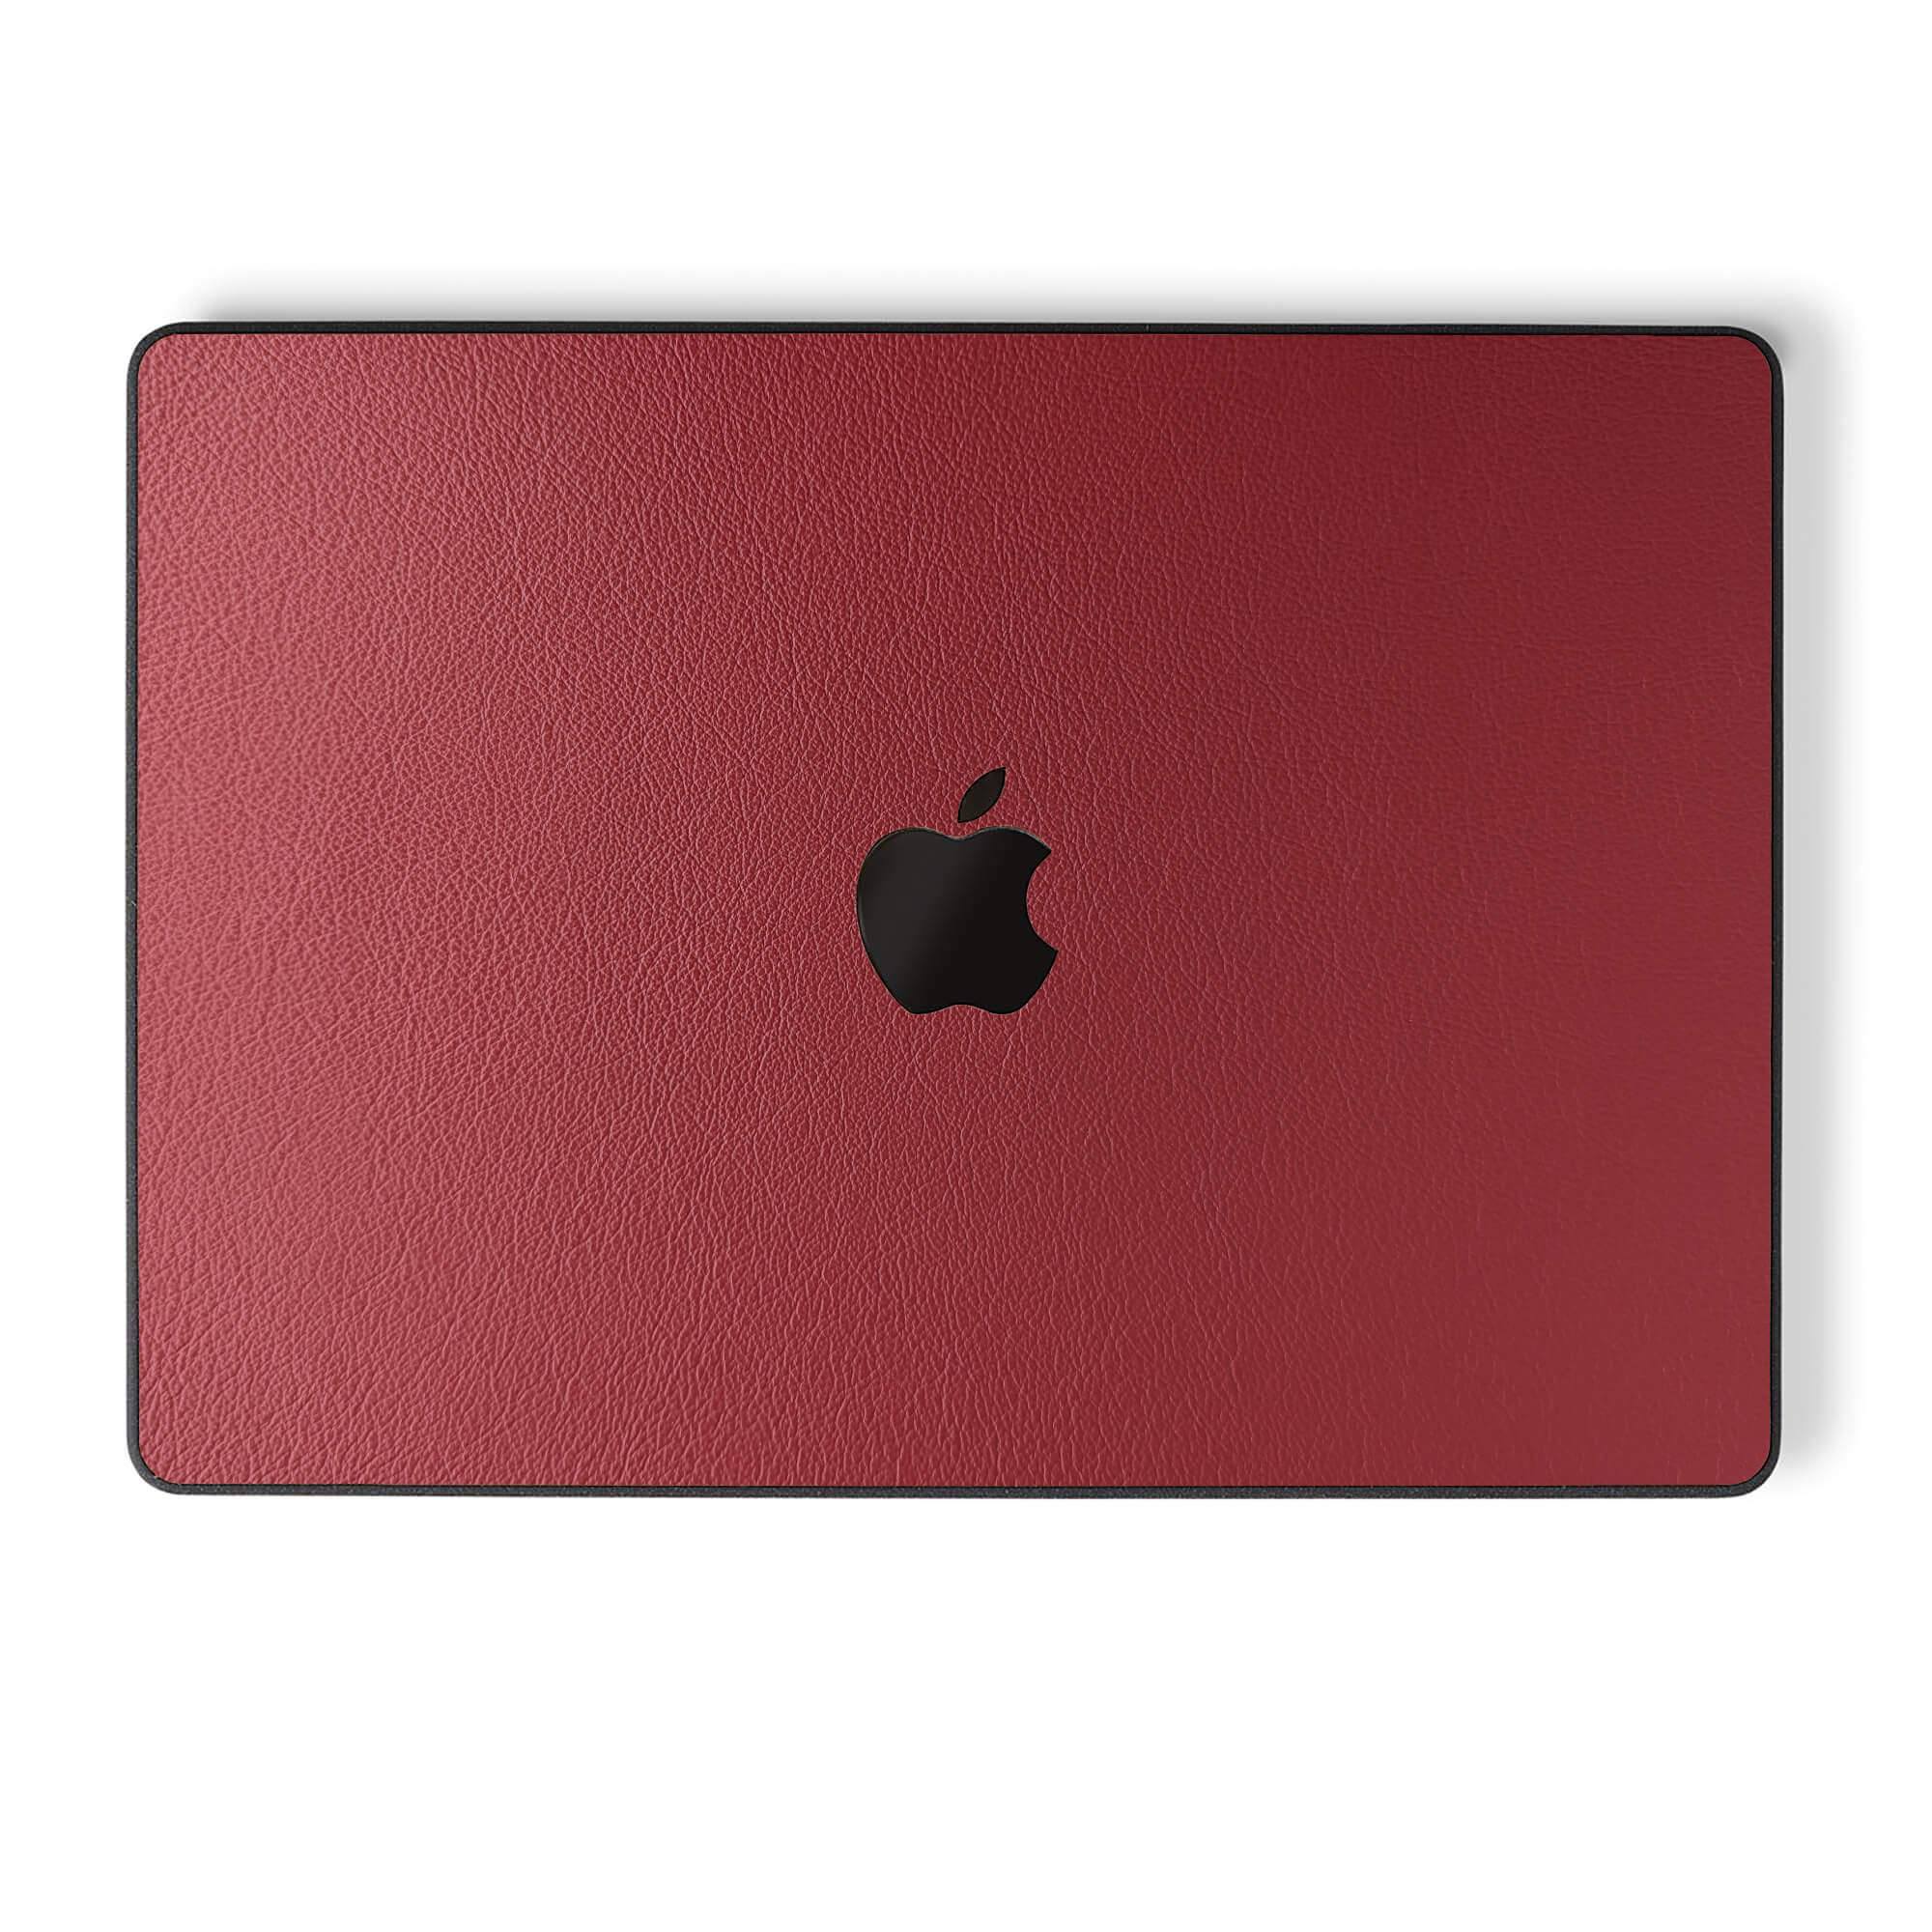 alt:Leather MacBook Case | var:red |